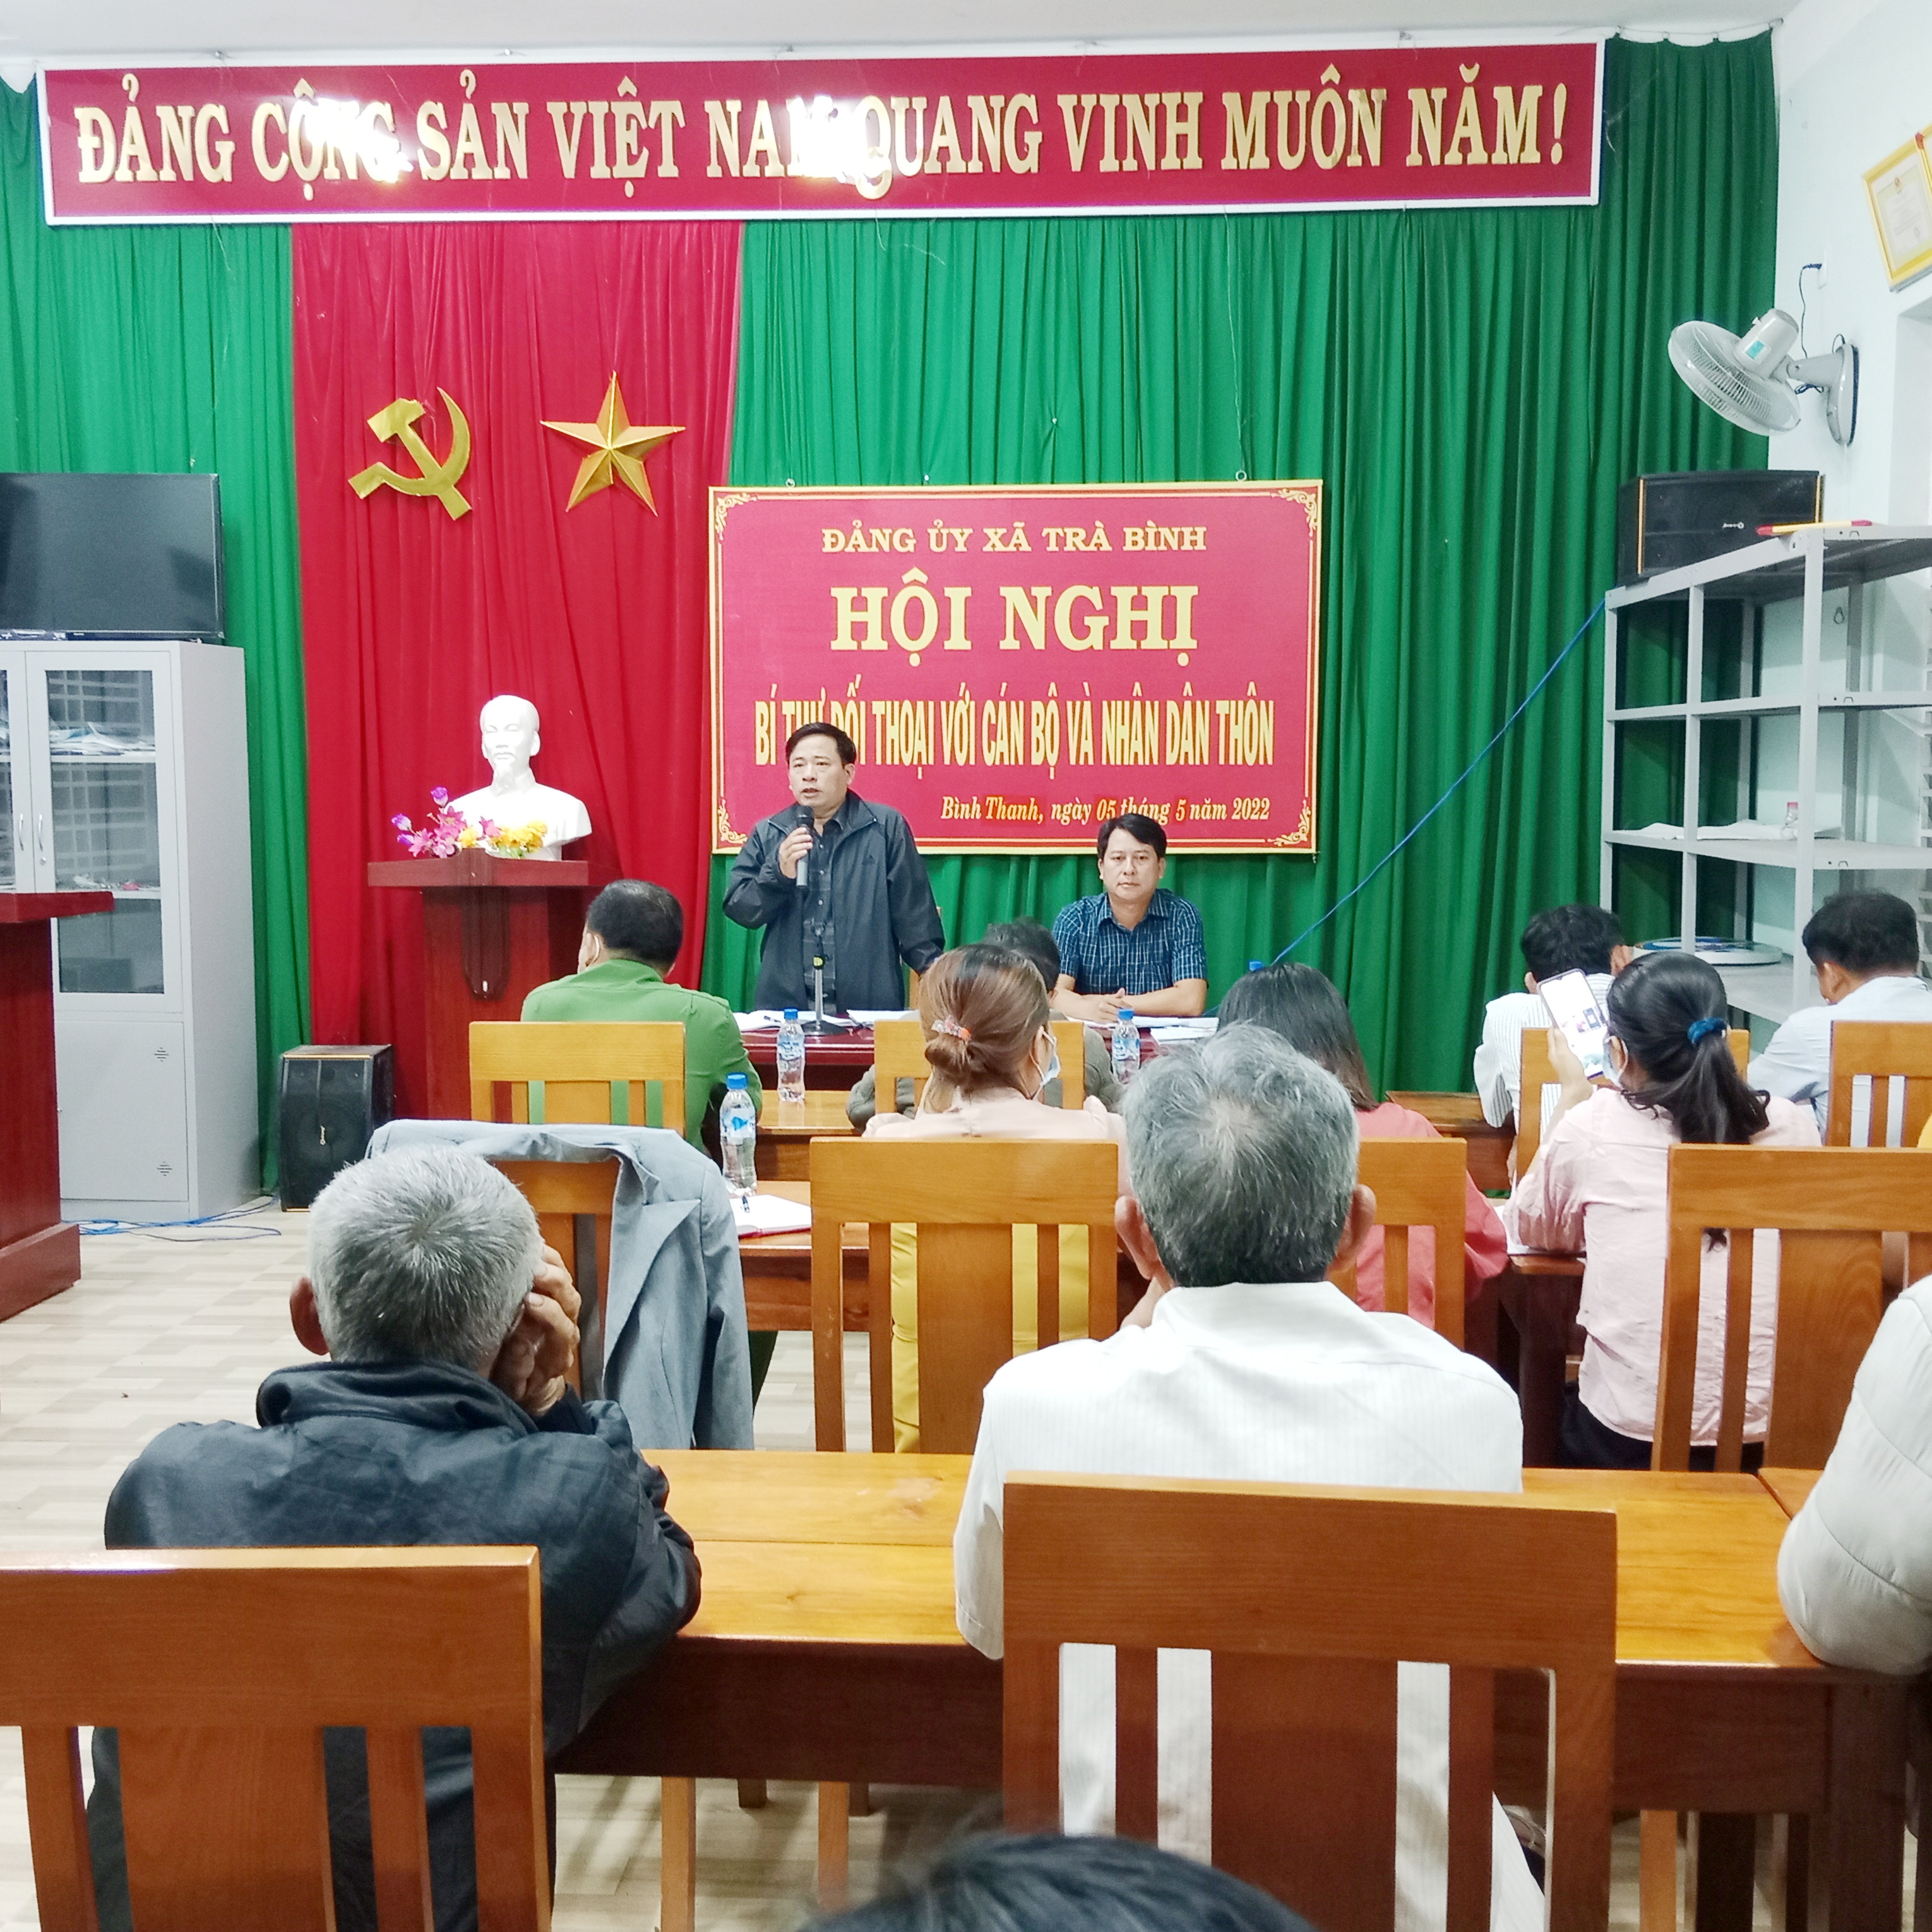 Bí thư Đảng ủy xã Trà Bình đối thoại với nhân dân thôn Bình Thanh